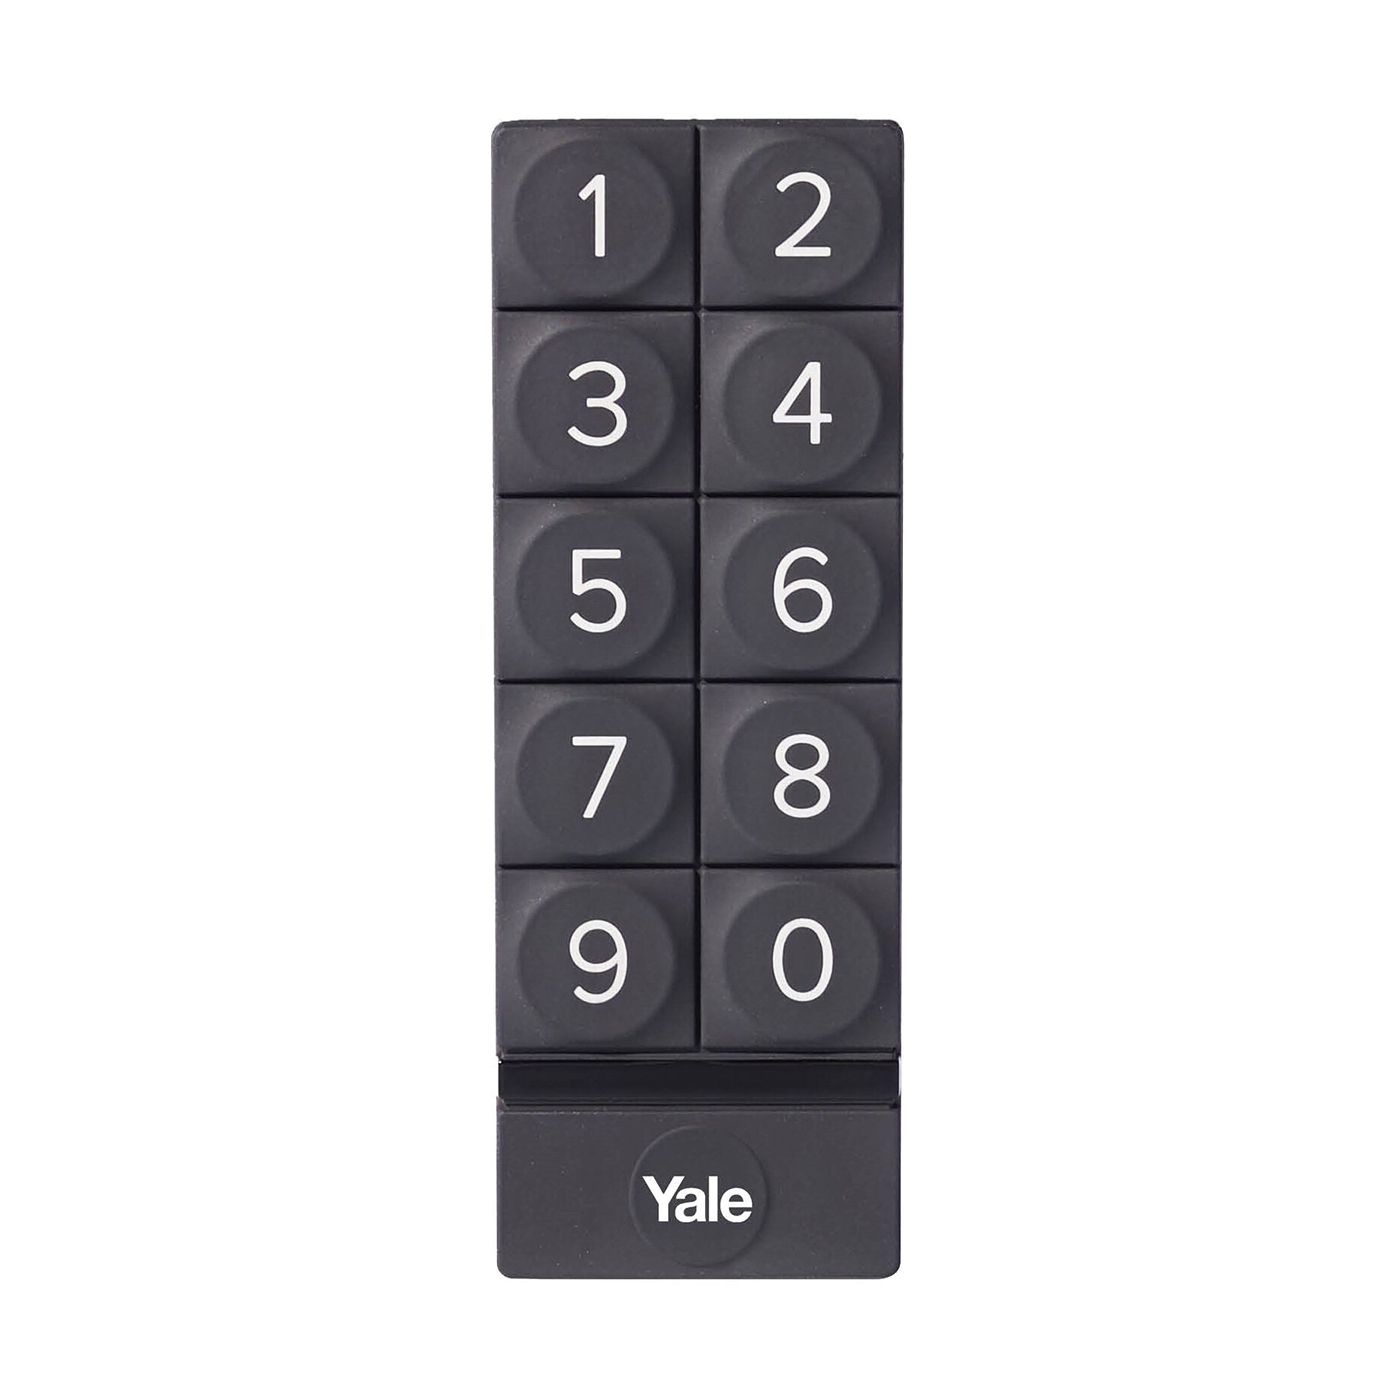 Inteligentny zamek Yale Linus Smart Lock L2 czarny - zestaw z klawiaturą numeryczną Yale - Smart Keypad